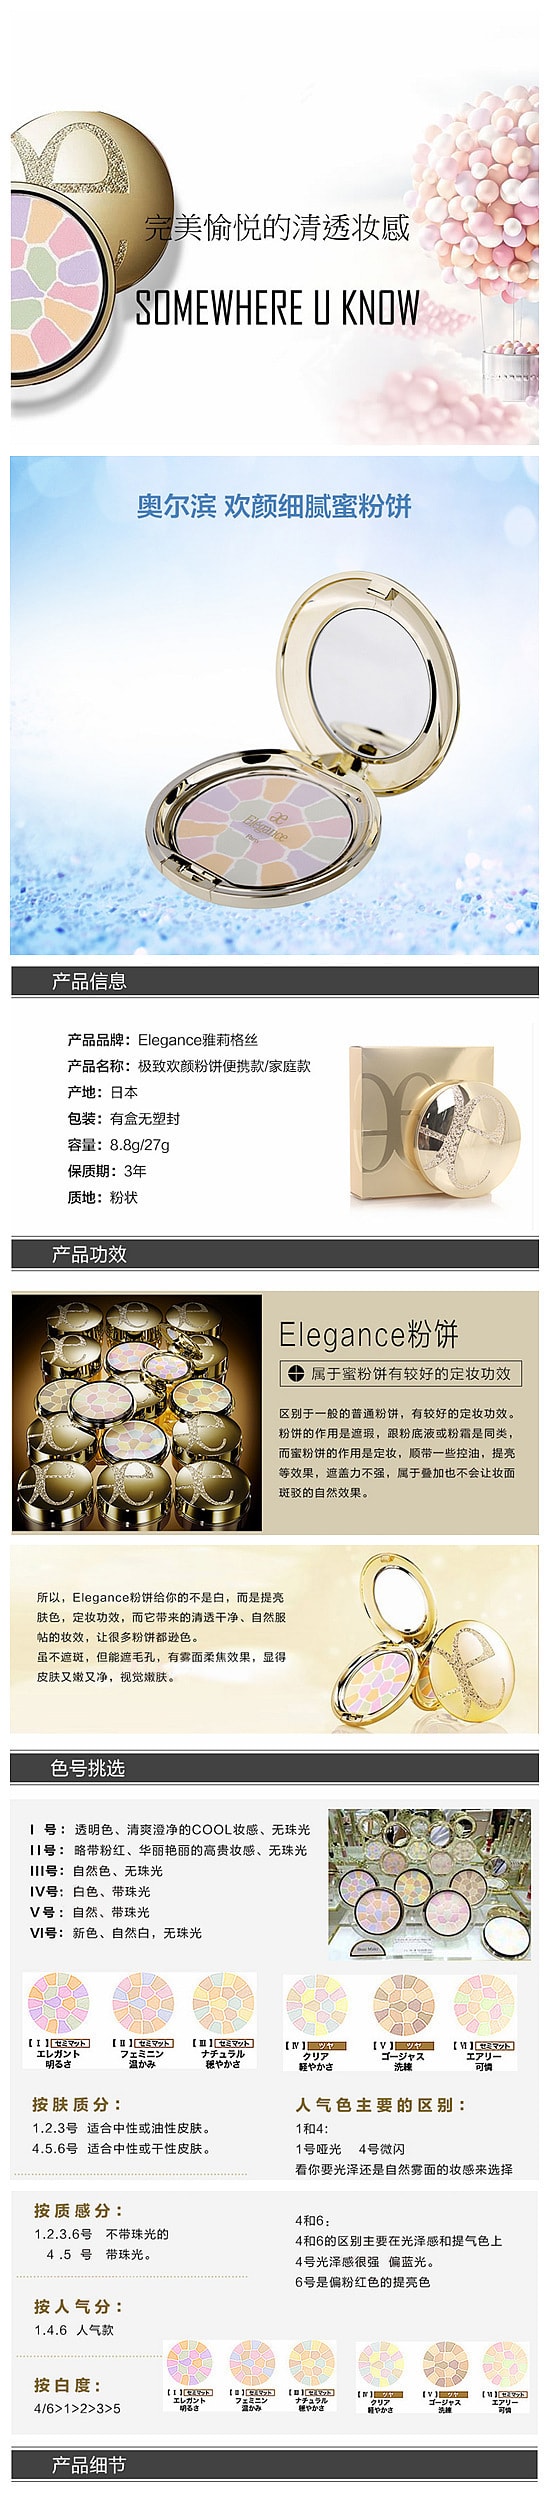 【日本DHL直效郵件】ELEGANCE 極致歡顏蜜粉餅 #1號 E大餅8.8gCOSME大賞受賞